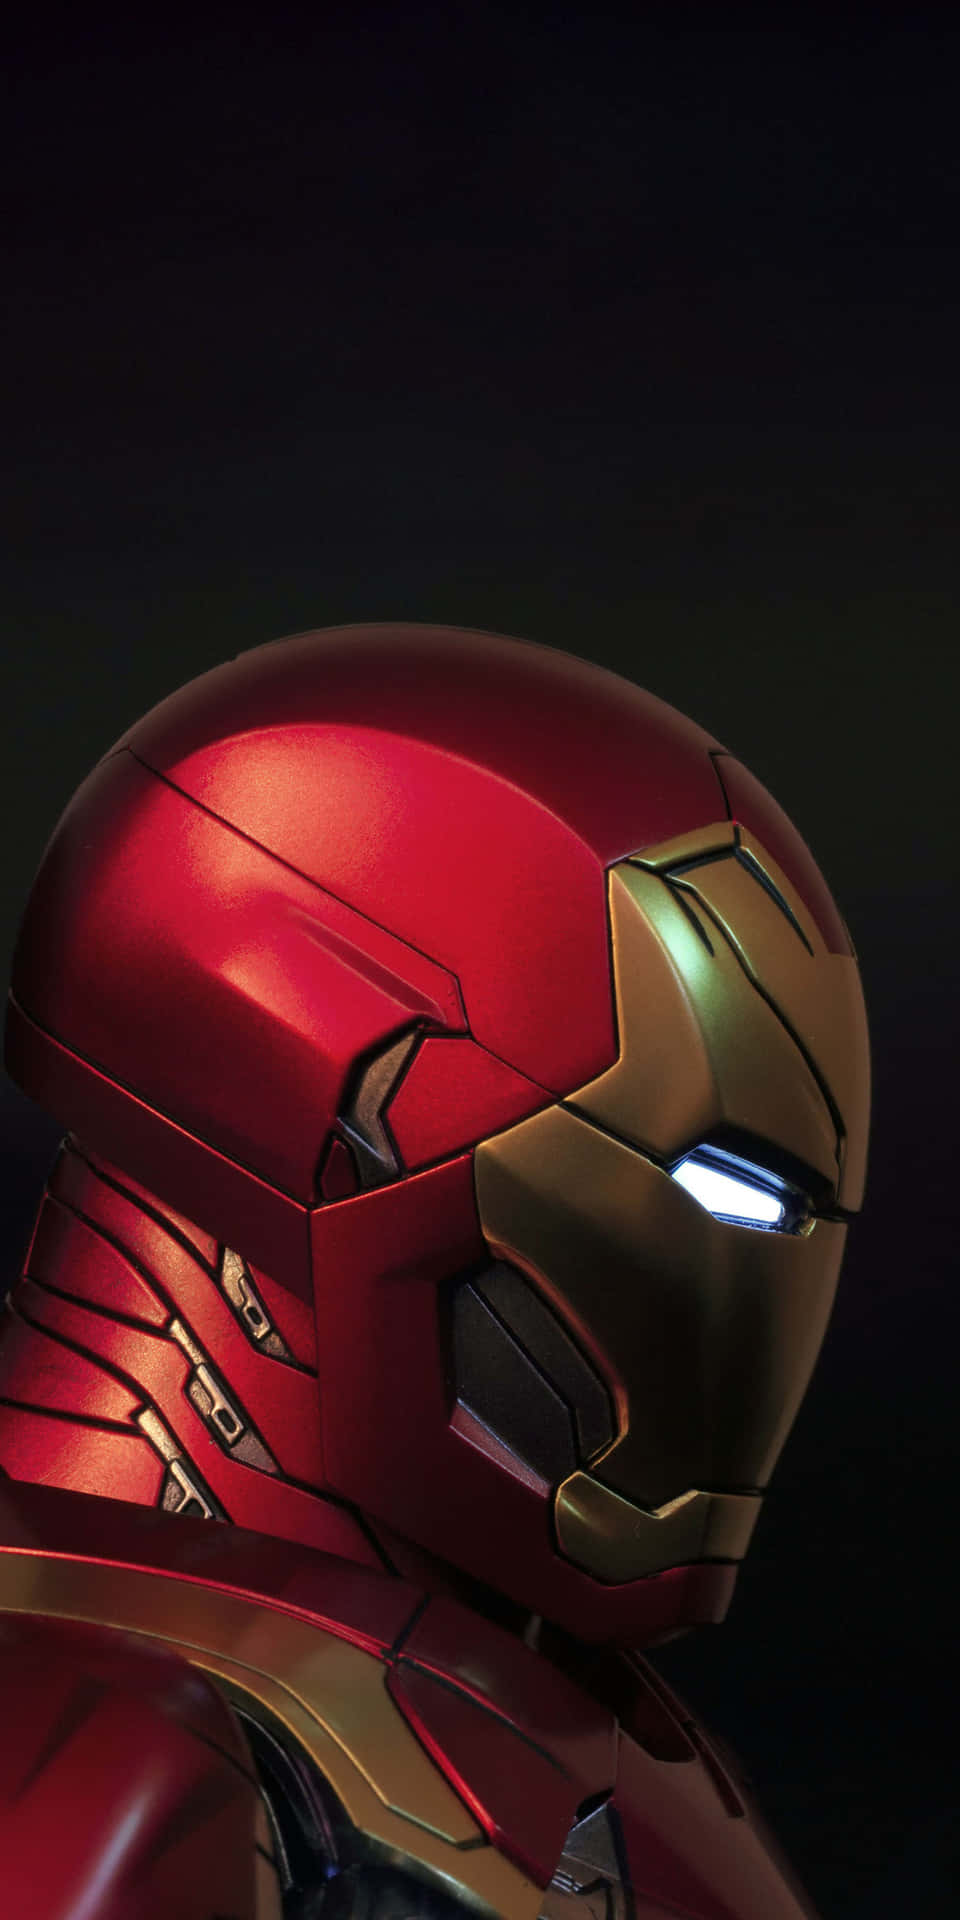 Fondode Pantalla Para El Pixel 3 Con La Cabeza De Iron Man En El Lateral.